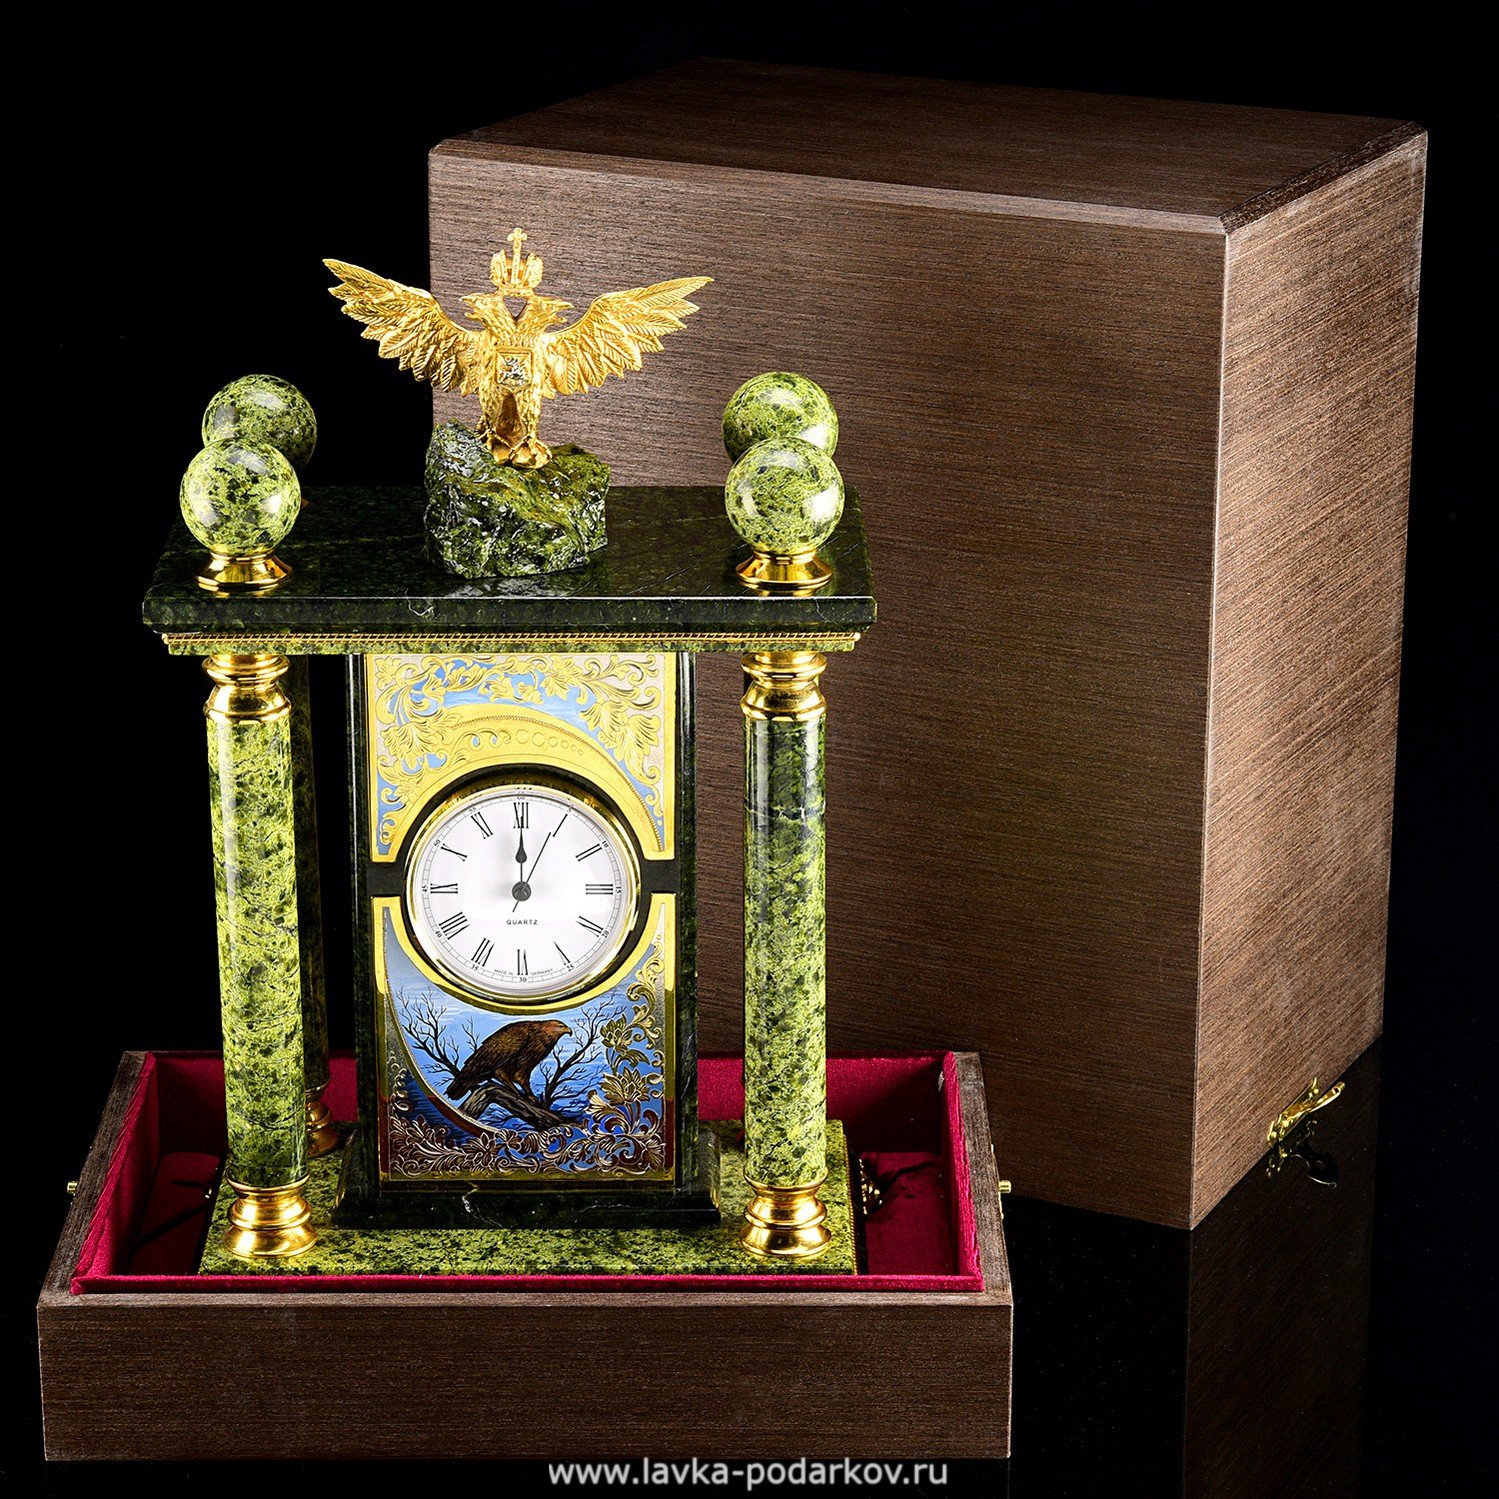 Магазины часов златоуст. Каминные часы из змеевика. Часы Златоуст. Часы из Златоуста. Часы Златоустовского часового.